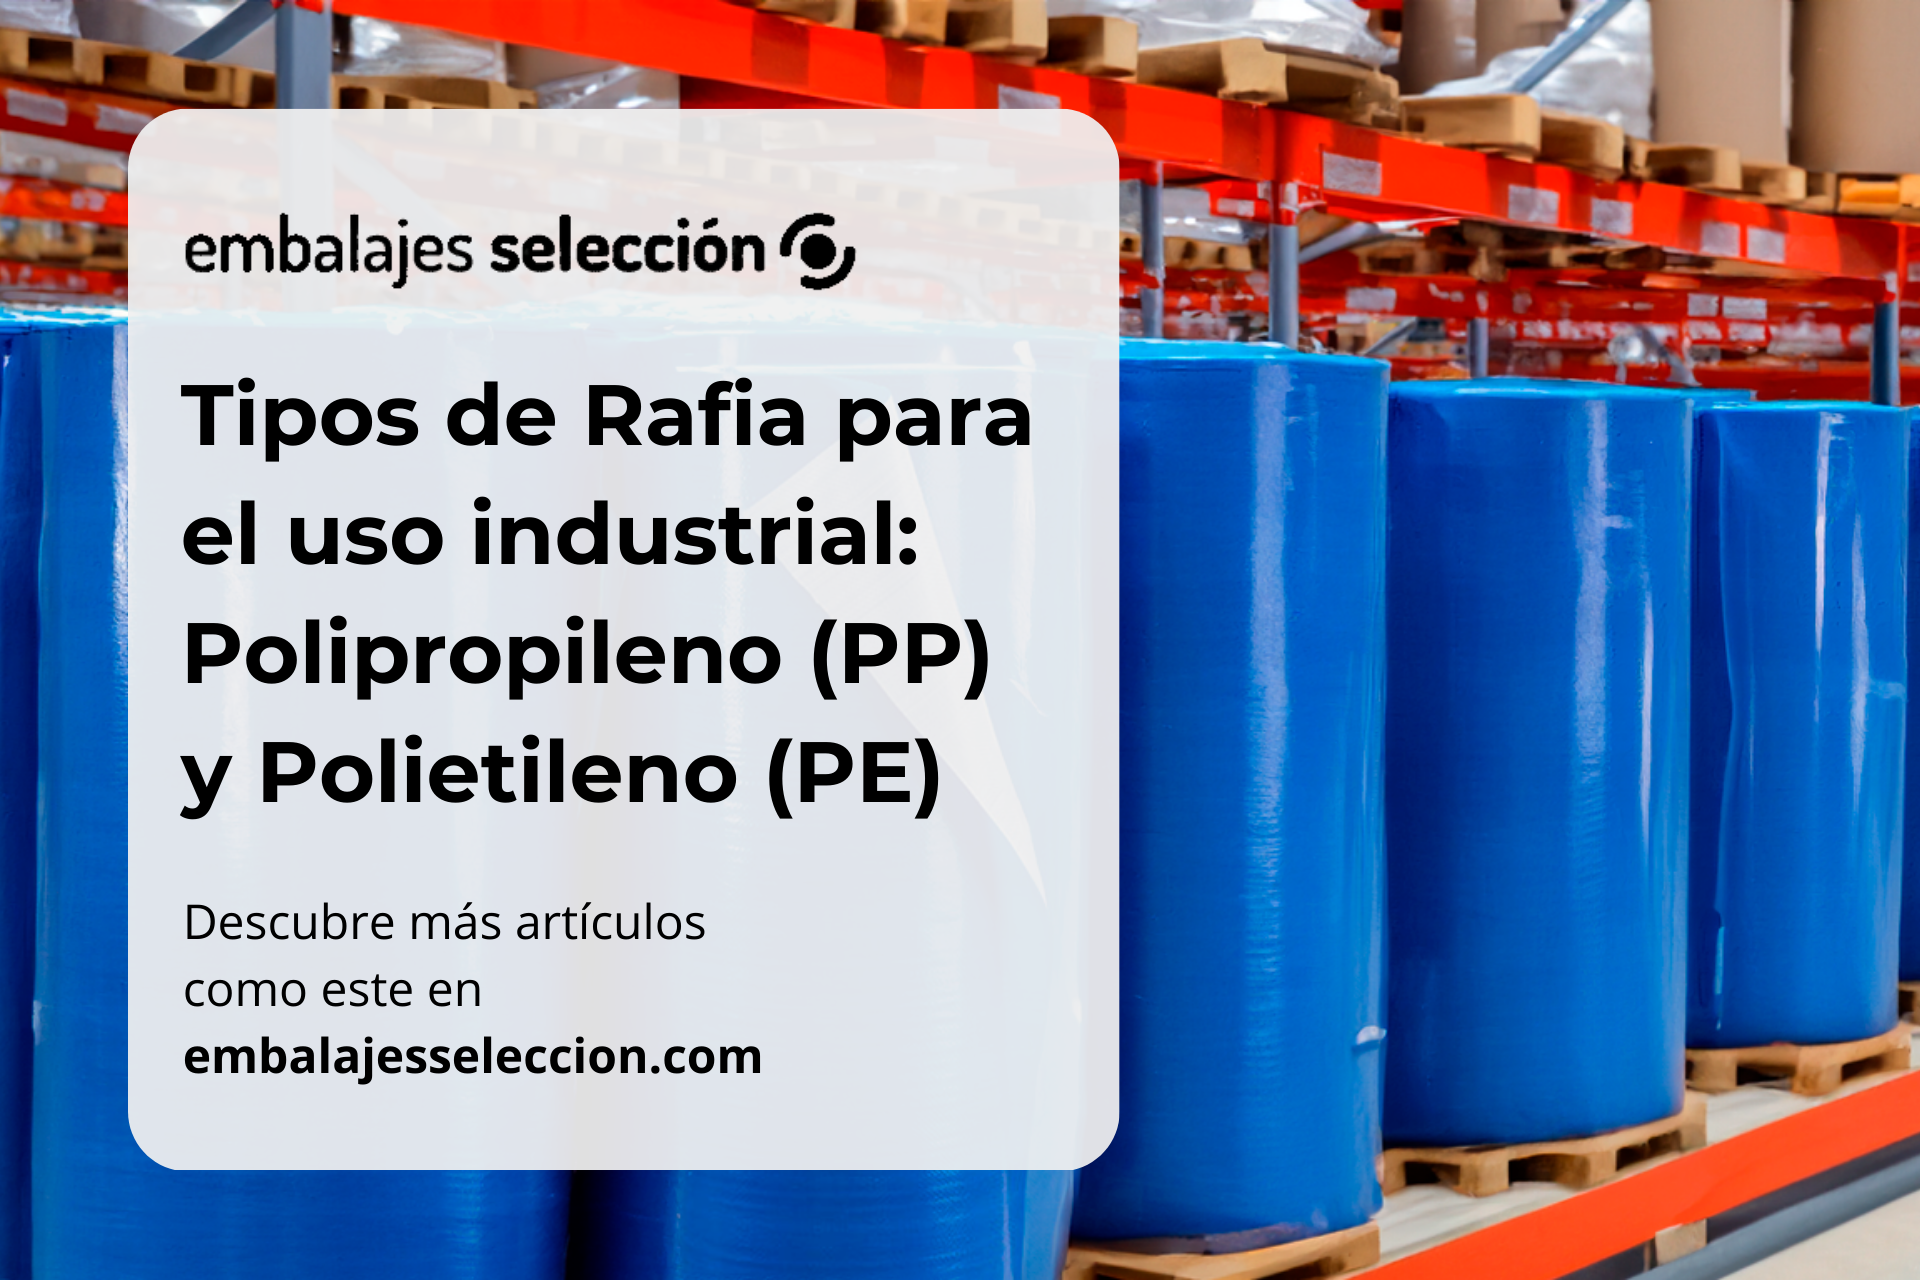 Tipos e rafia para el uso industrial: polipropileno (PP) y polietileno (PE)